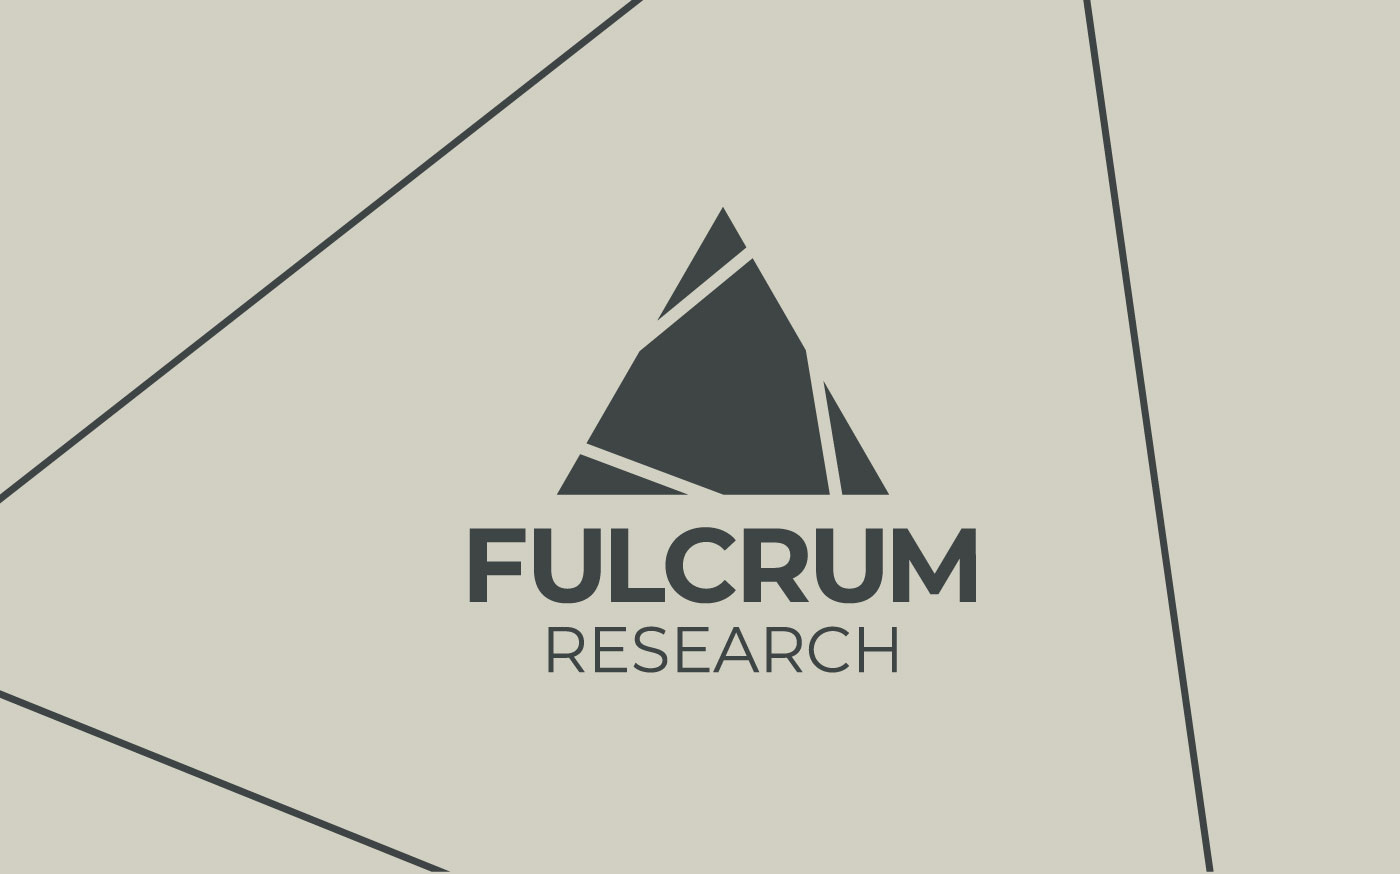 Fulcrum Research